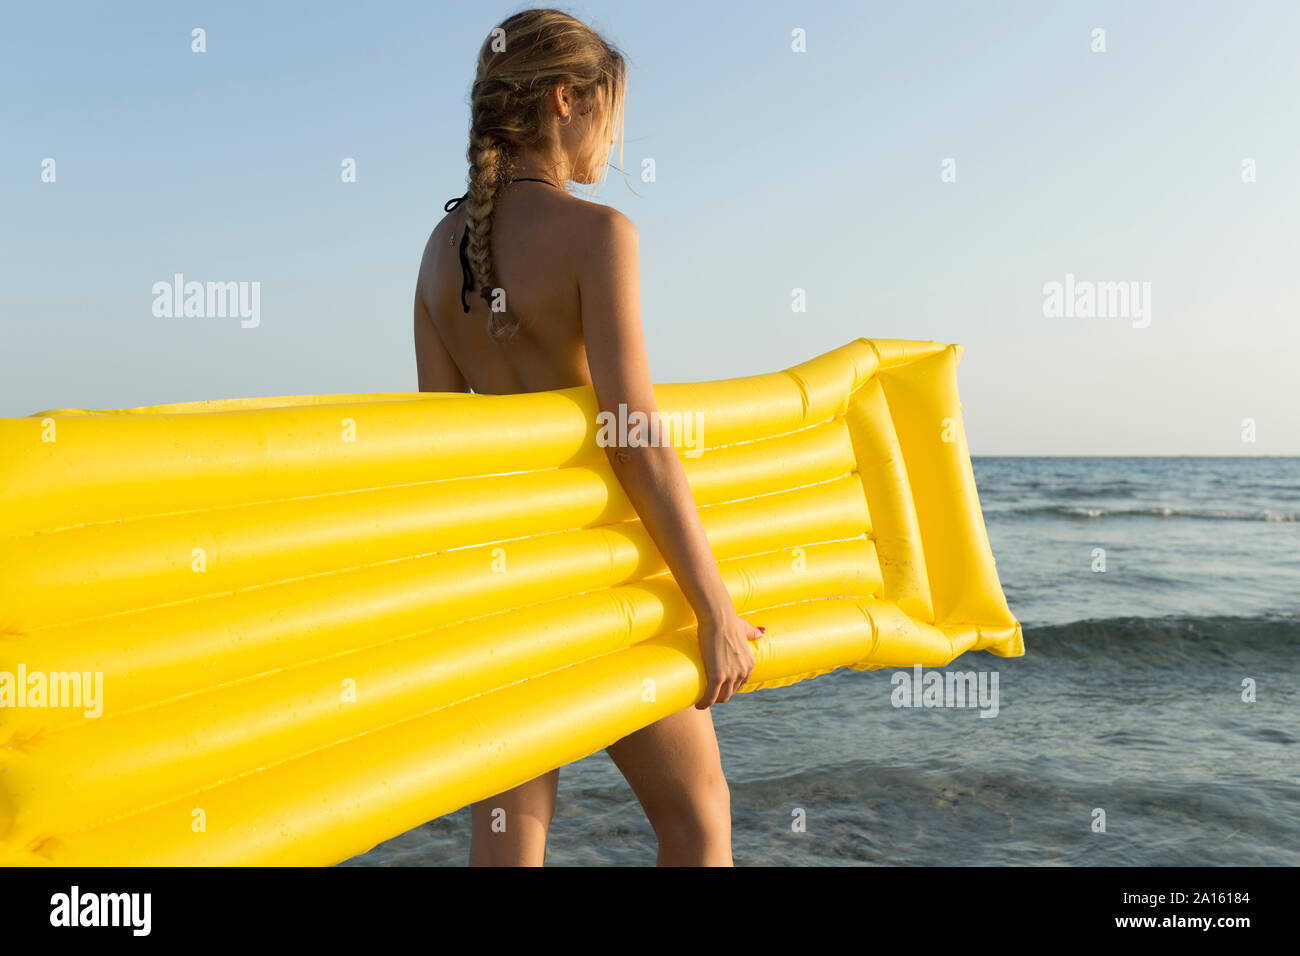 Vista posteriore della giovane donna con giallo airbed in spiaggia, guardando a distanza Foto Stock